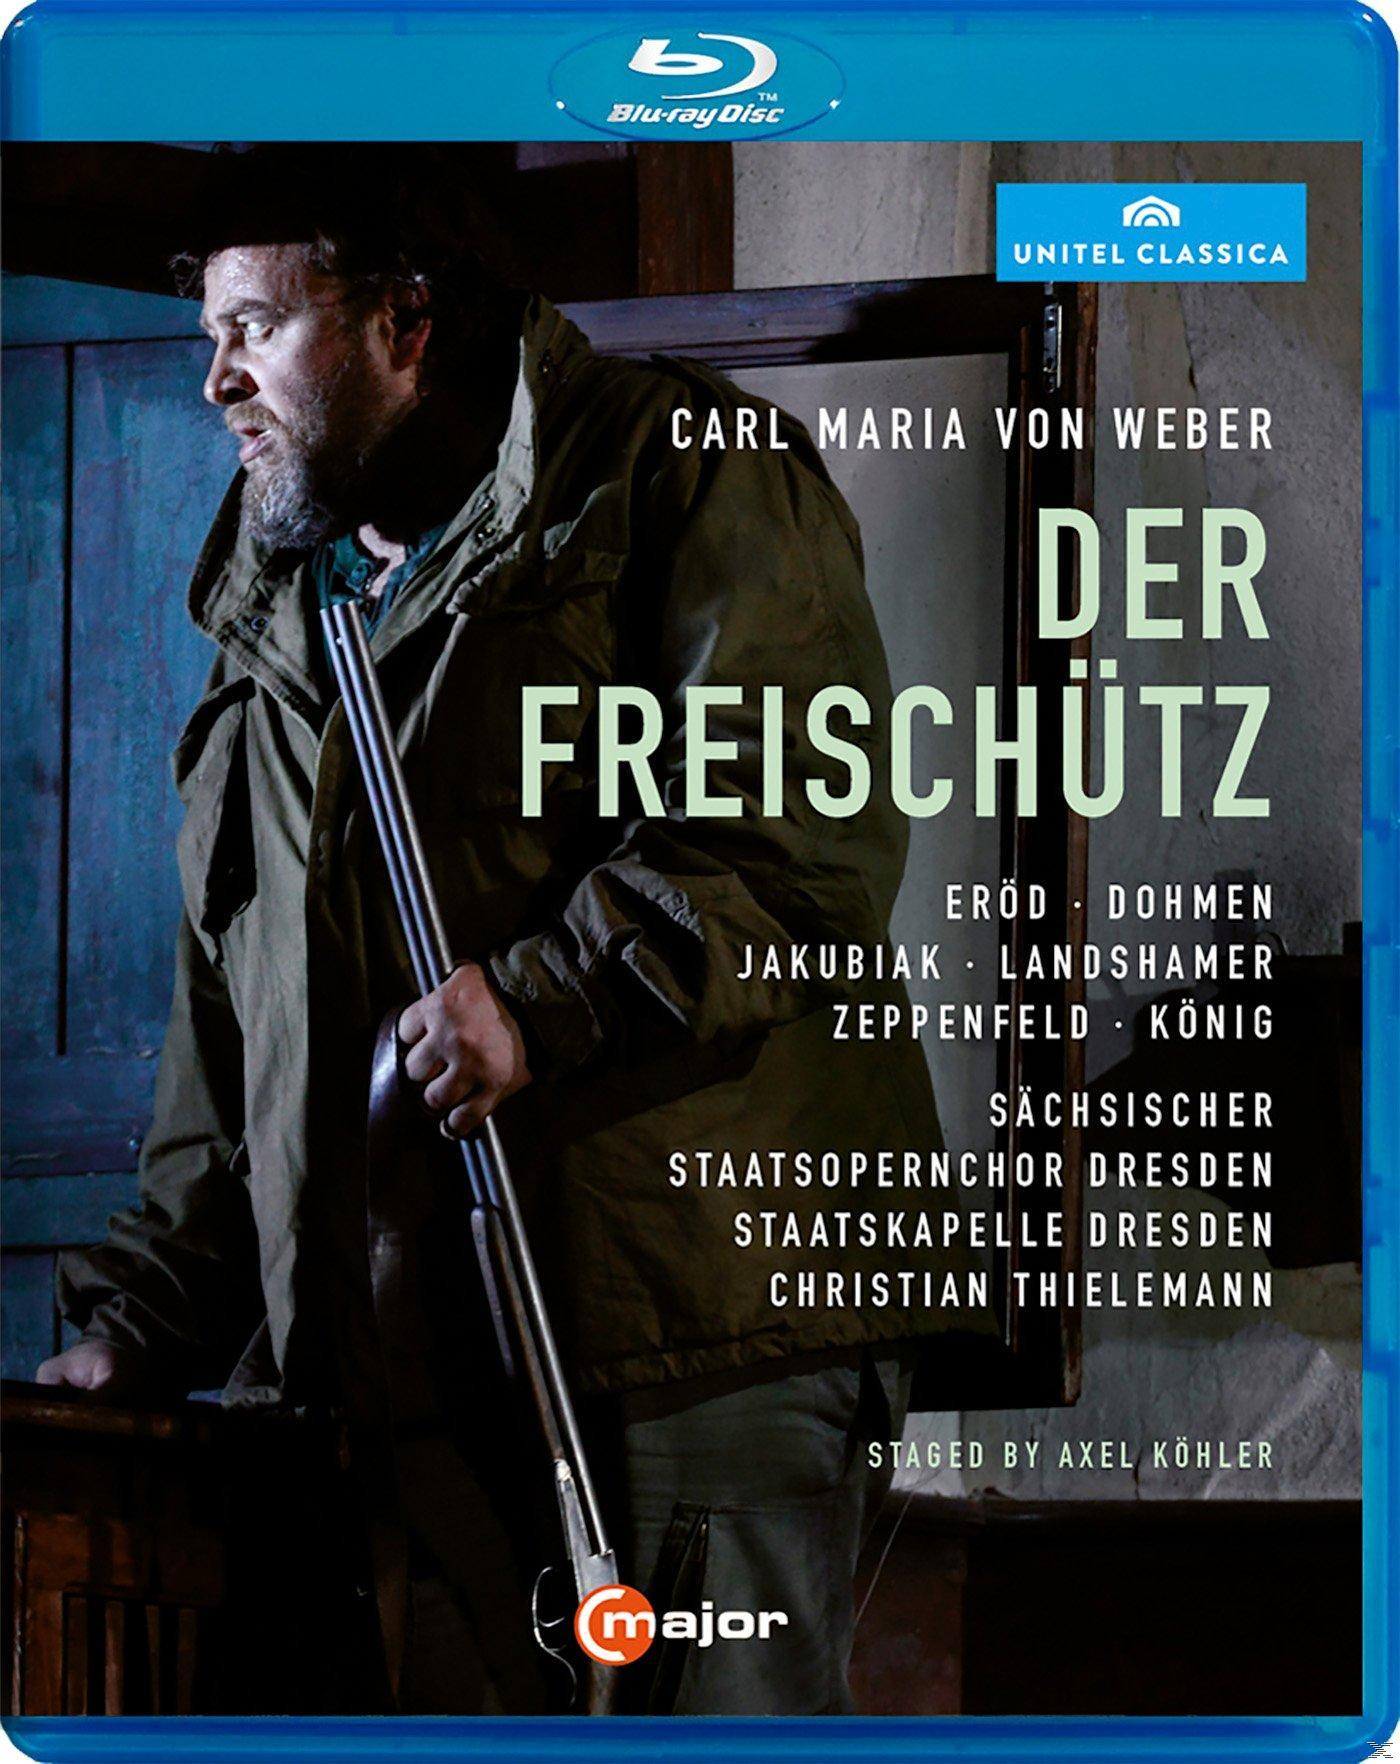 VARIOUS - Freischütz Der (Blu-ray) 